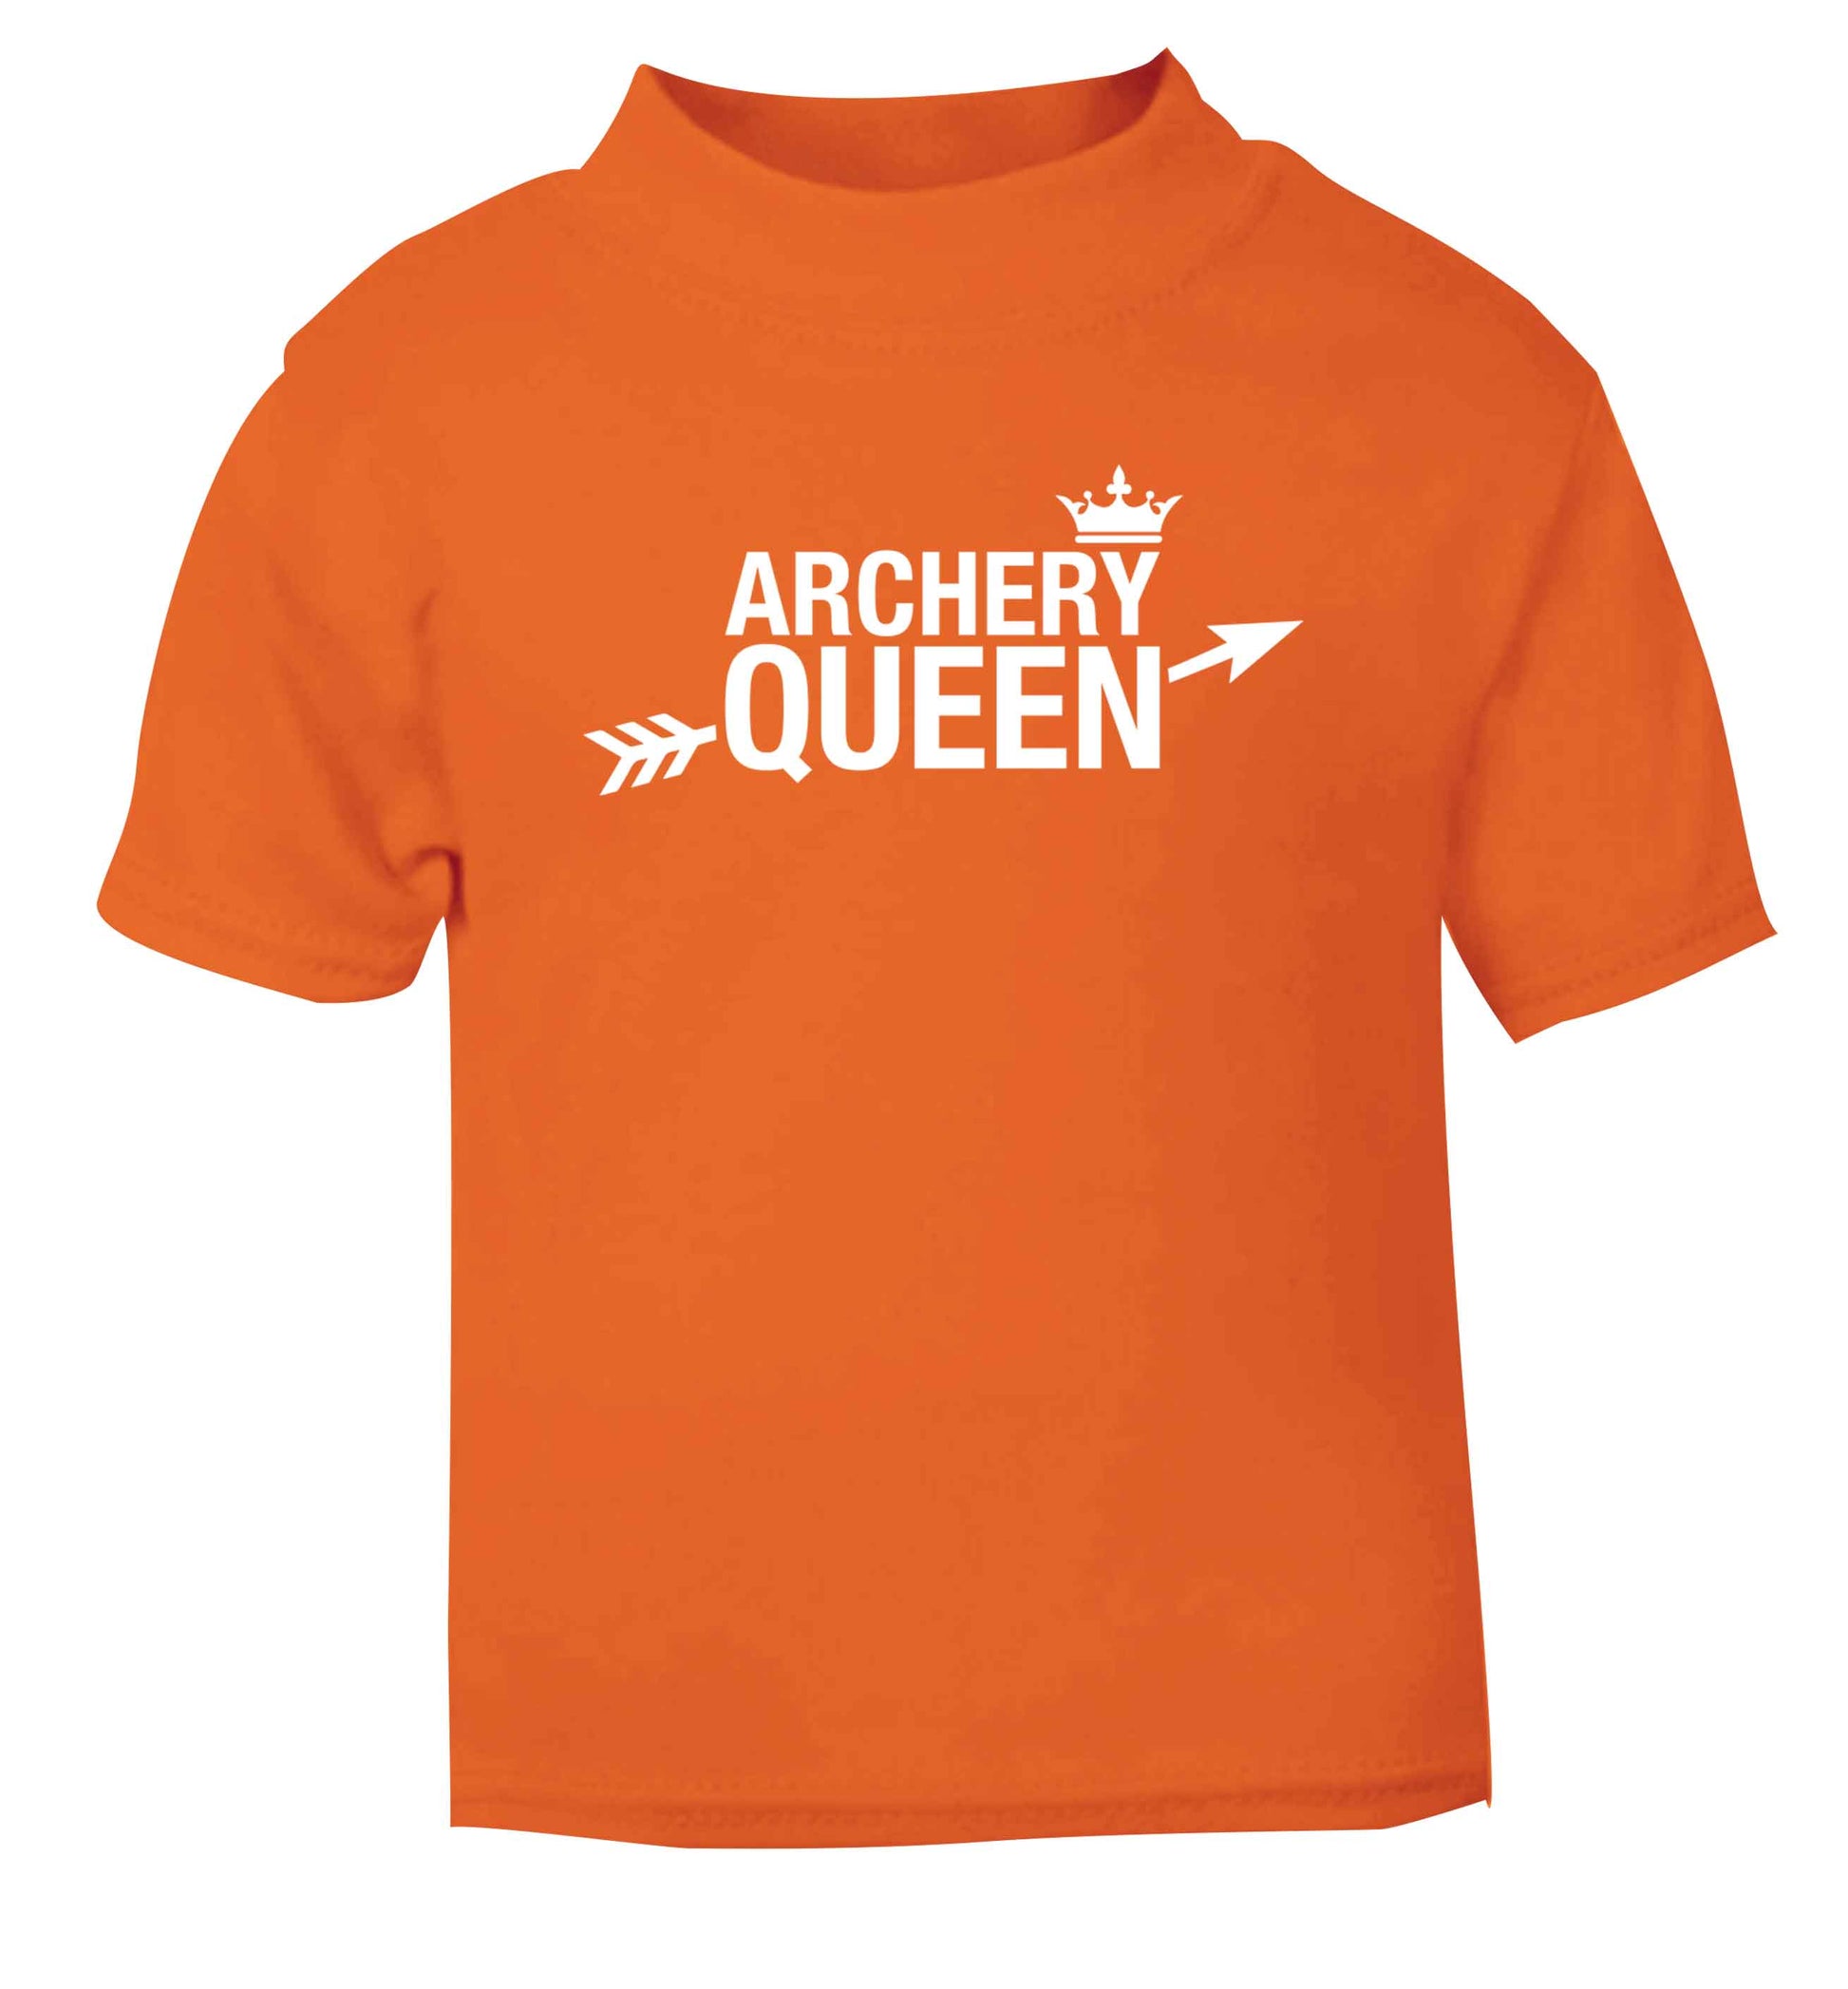 Archery queen orange Baby Toddler Tshirt 2 Years